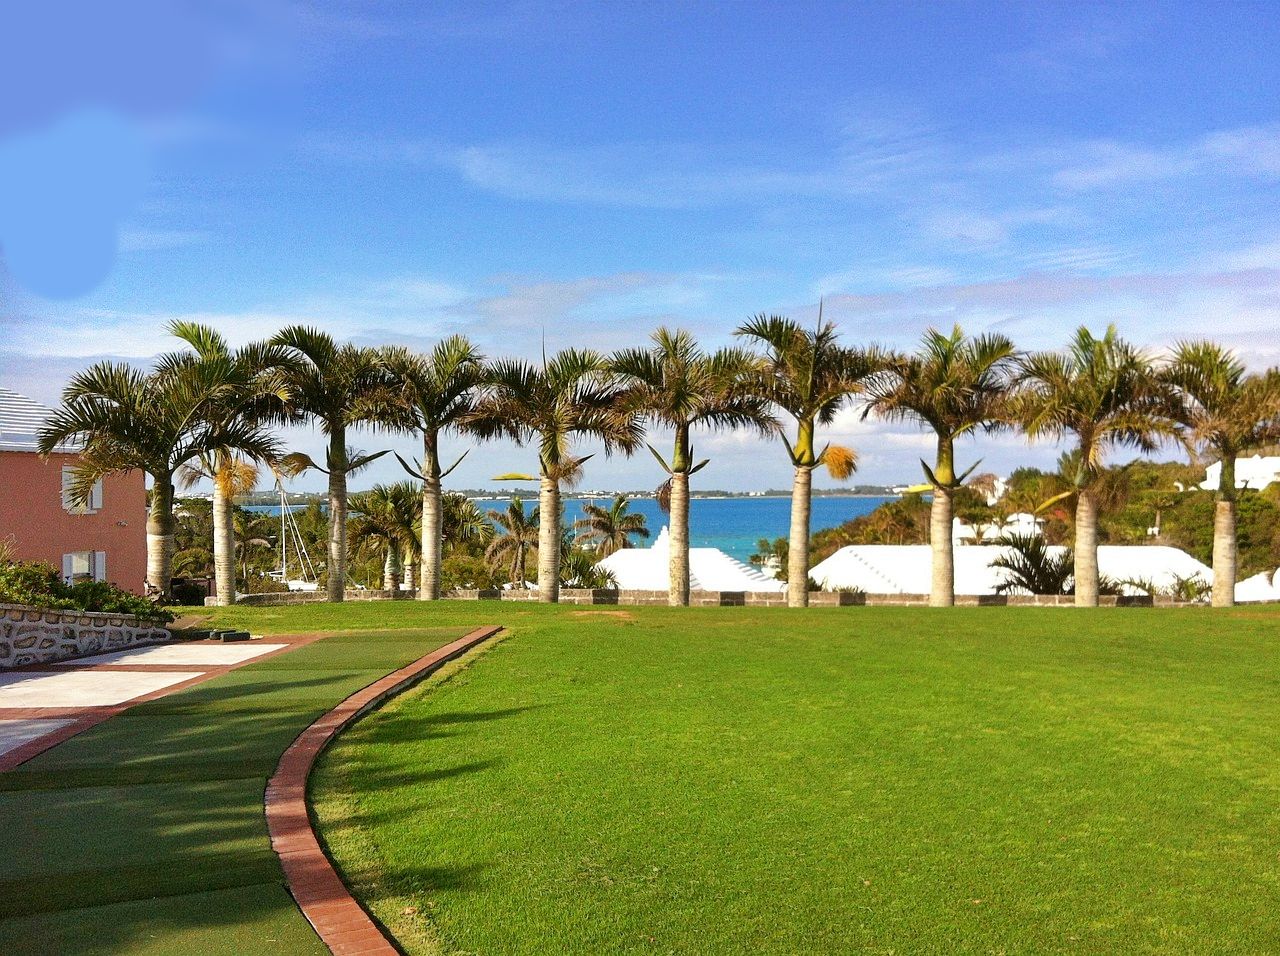 Golf course in Bermuda